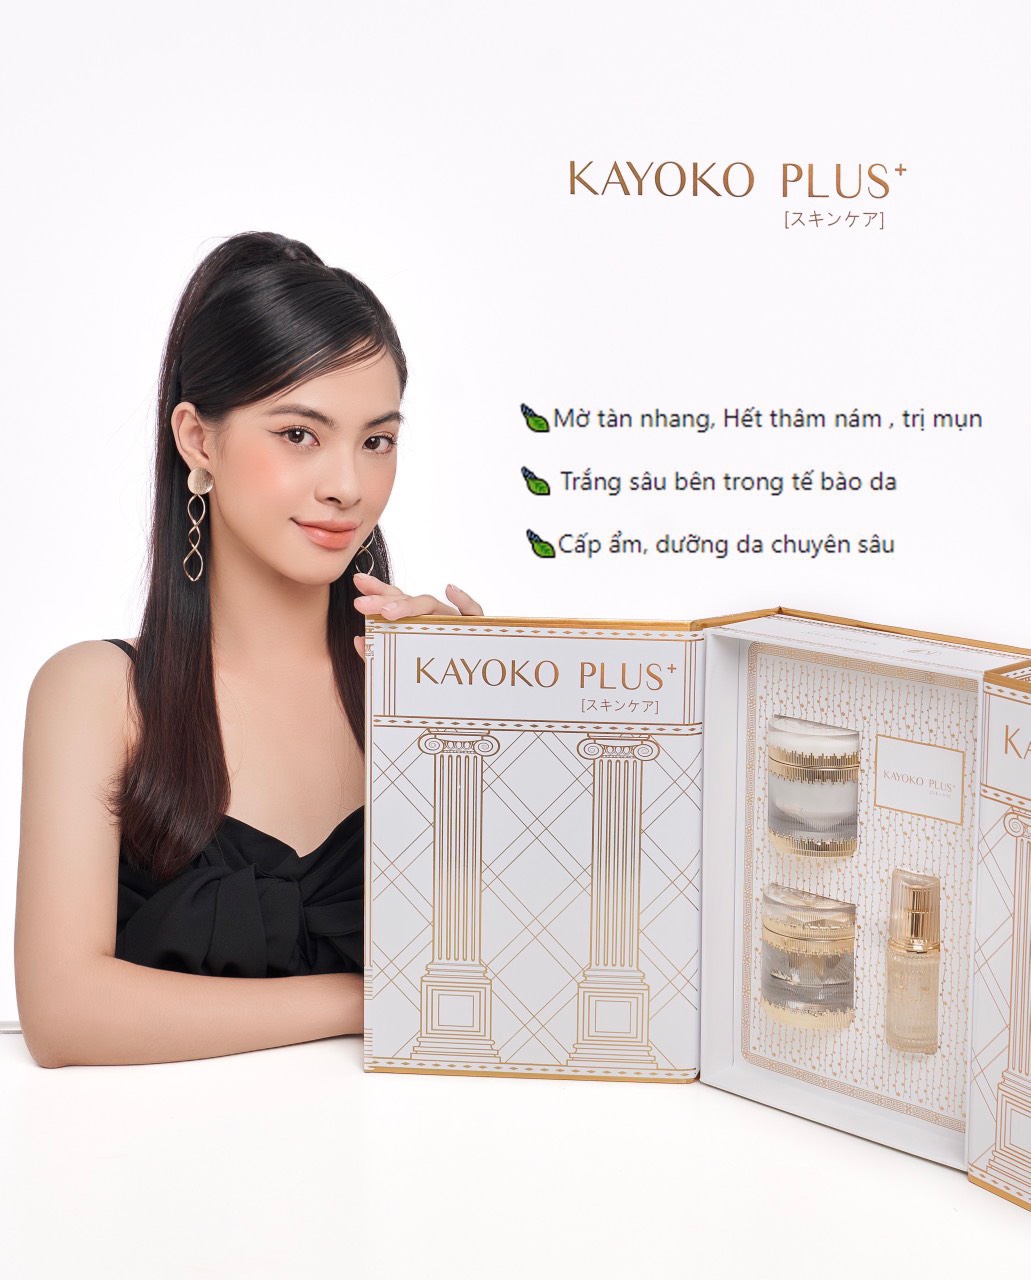 Mỗi sản phẩm của bộ mỹ phẩm Kayoko Plus sẽ mang đến cho người dùng những công dụng riêng